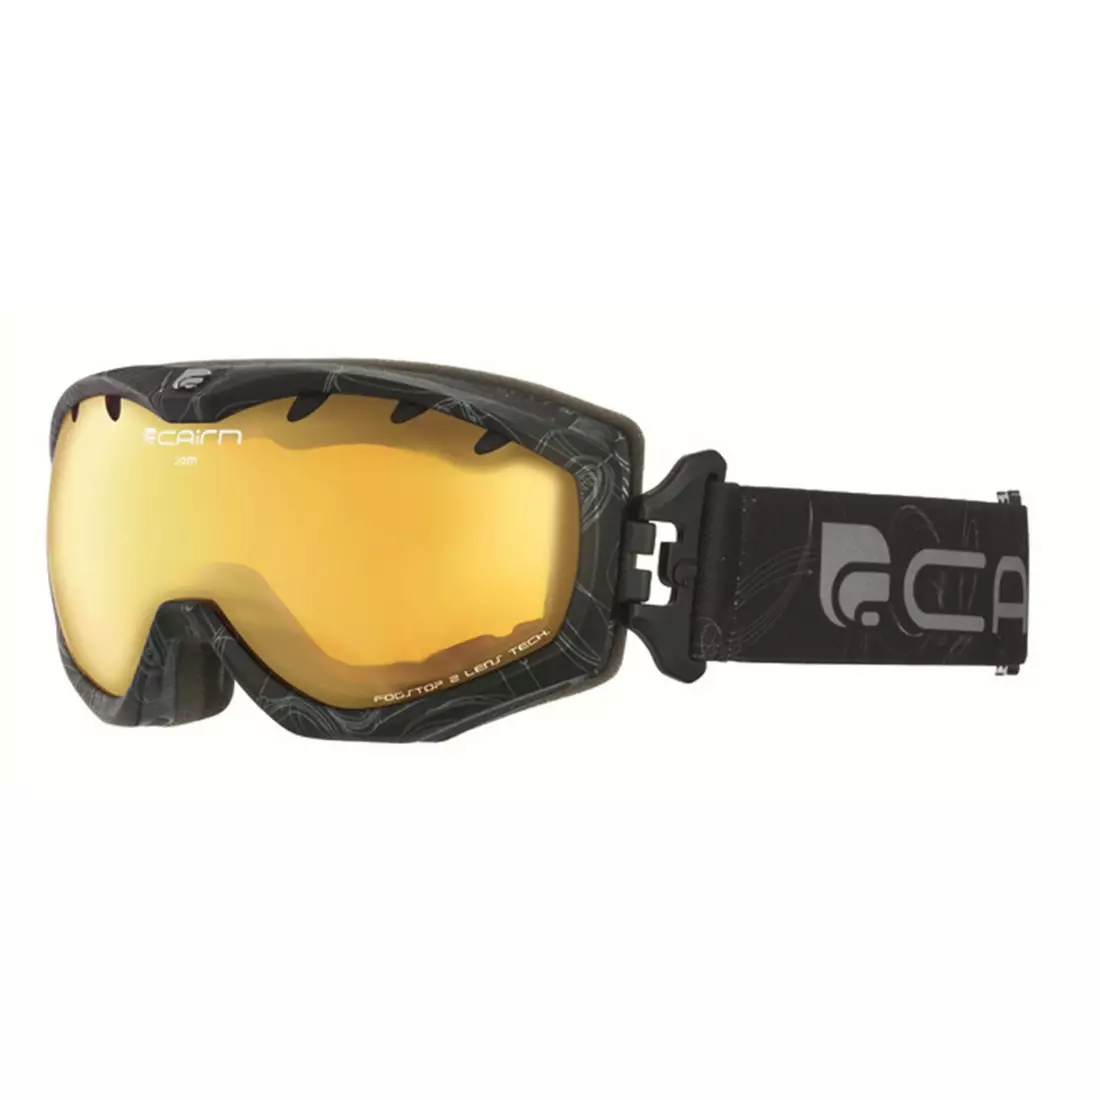 CAIRN ski/snowboard goggles JAM SPX1000 6966, black/orange, 5805776966